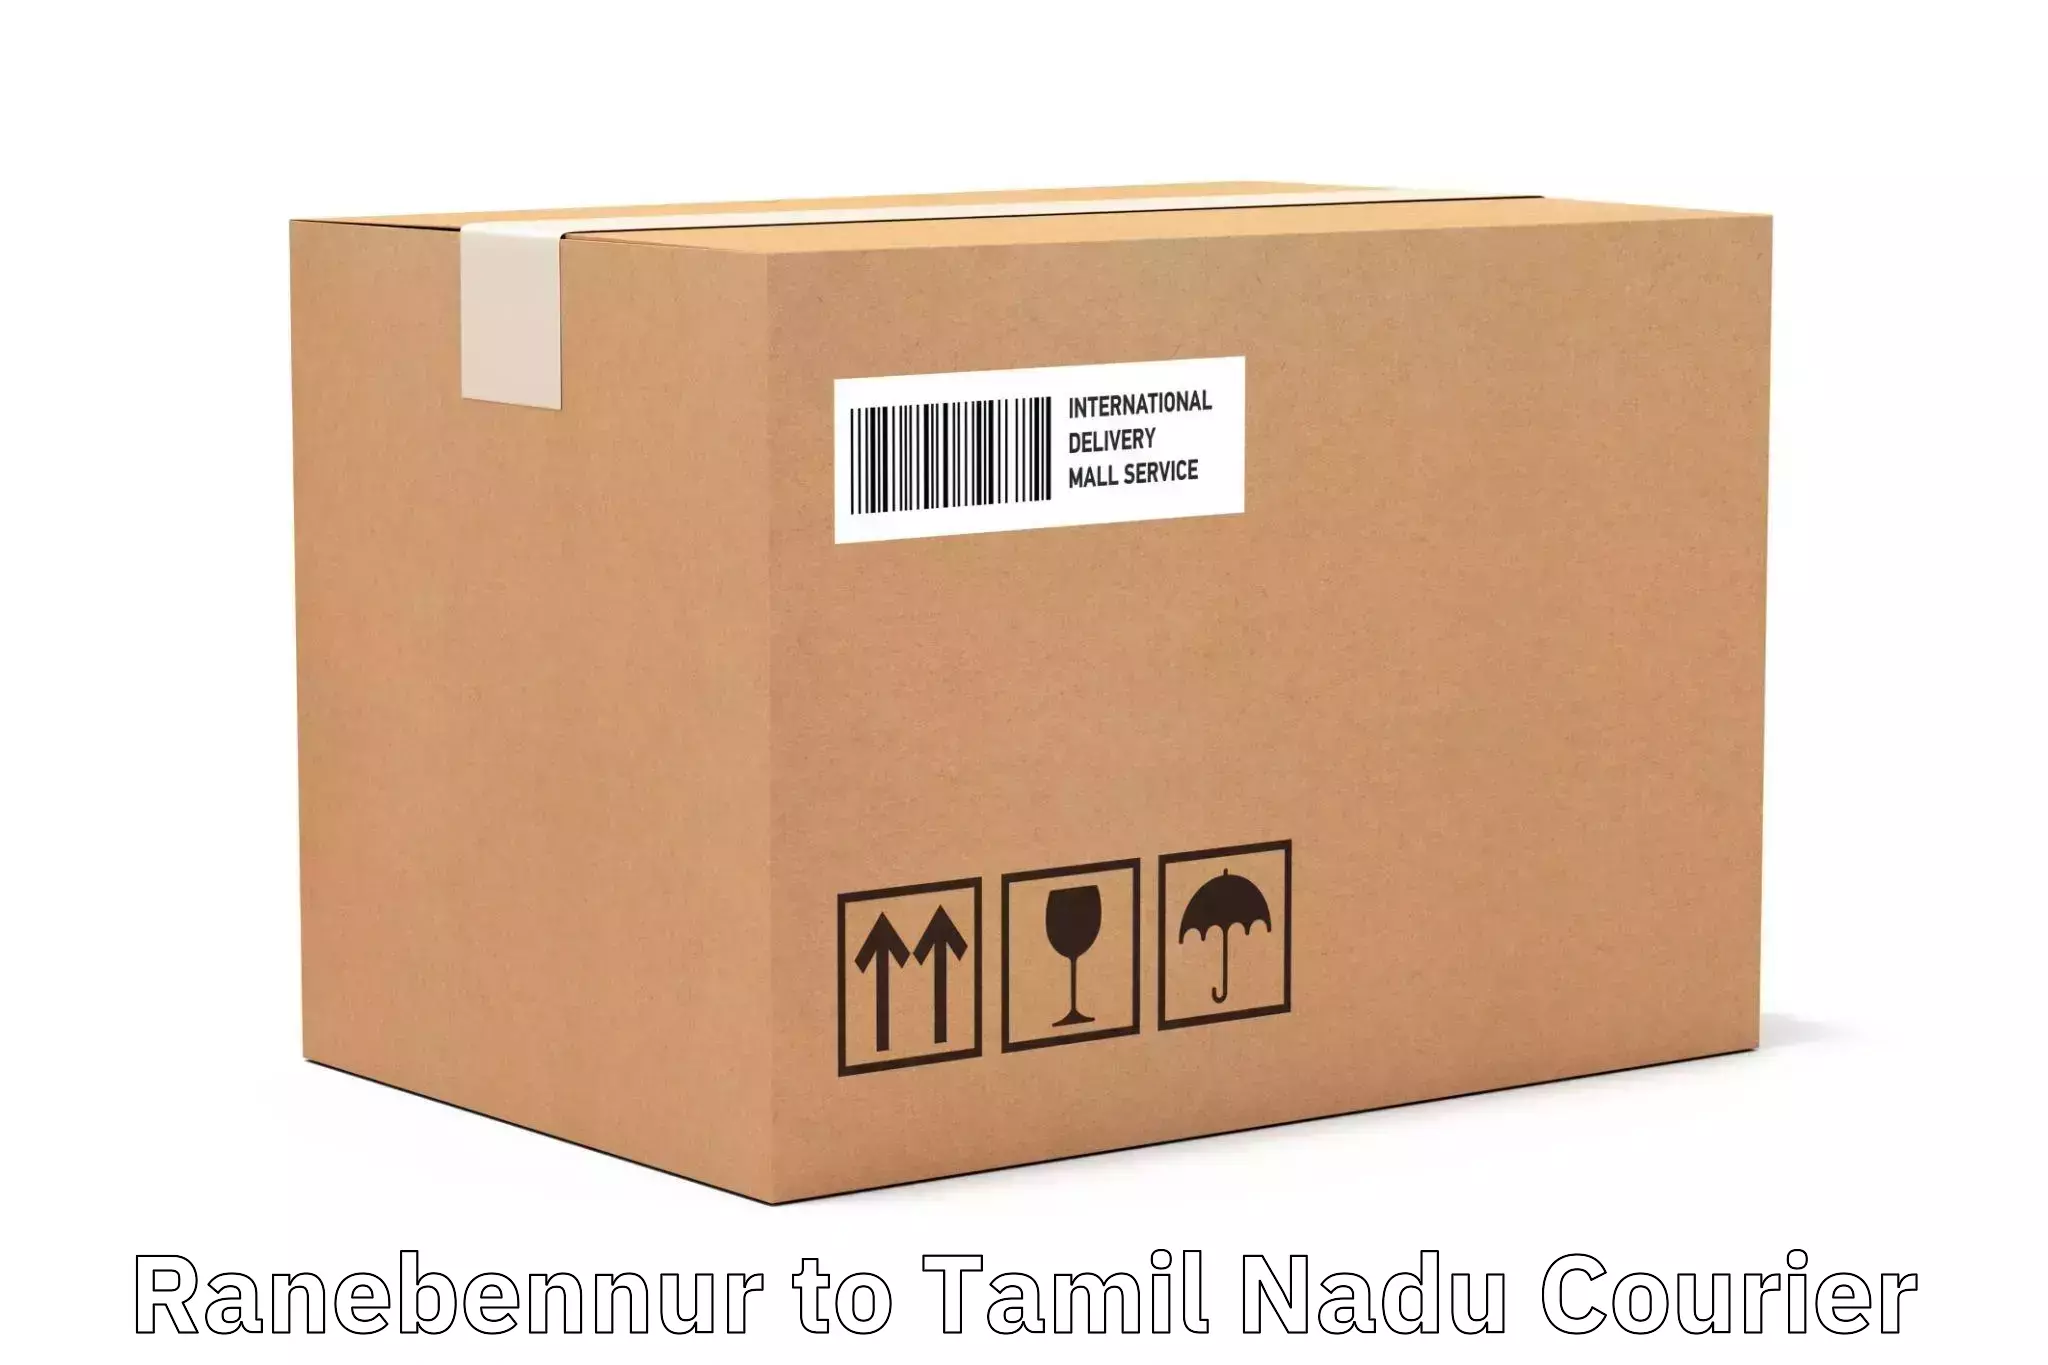 High-speed delivery Ranebennur to Bodinayakanur